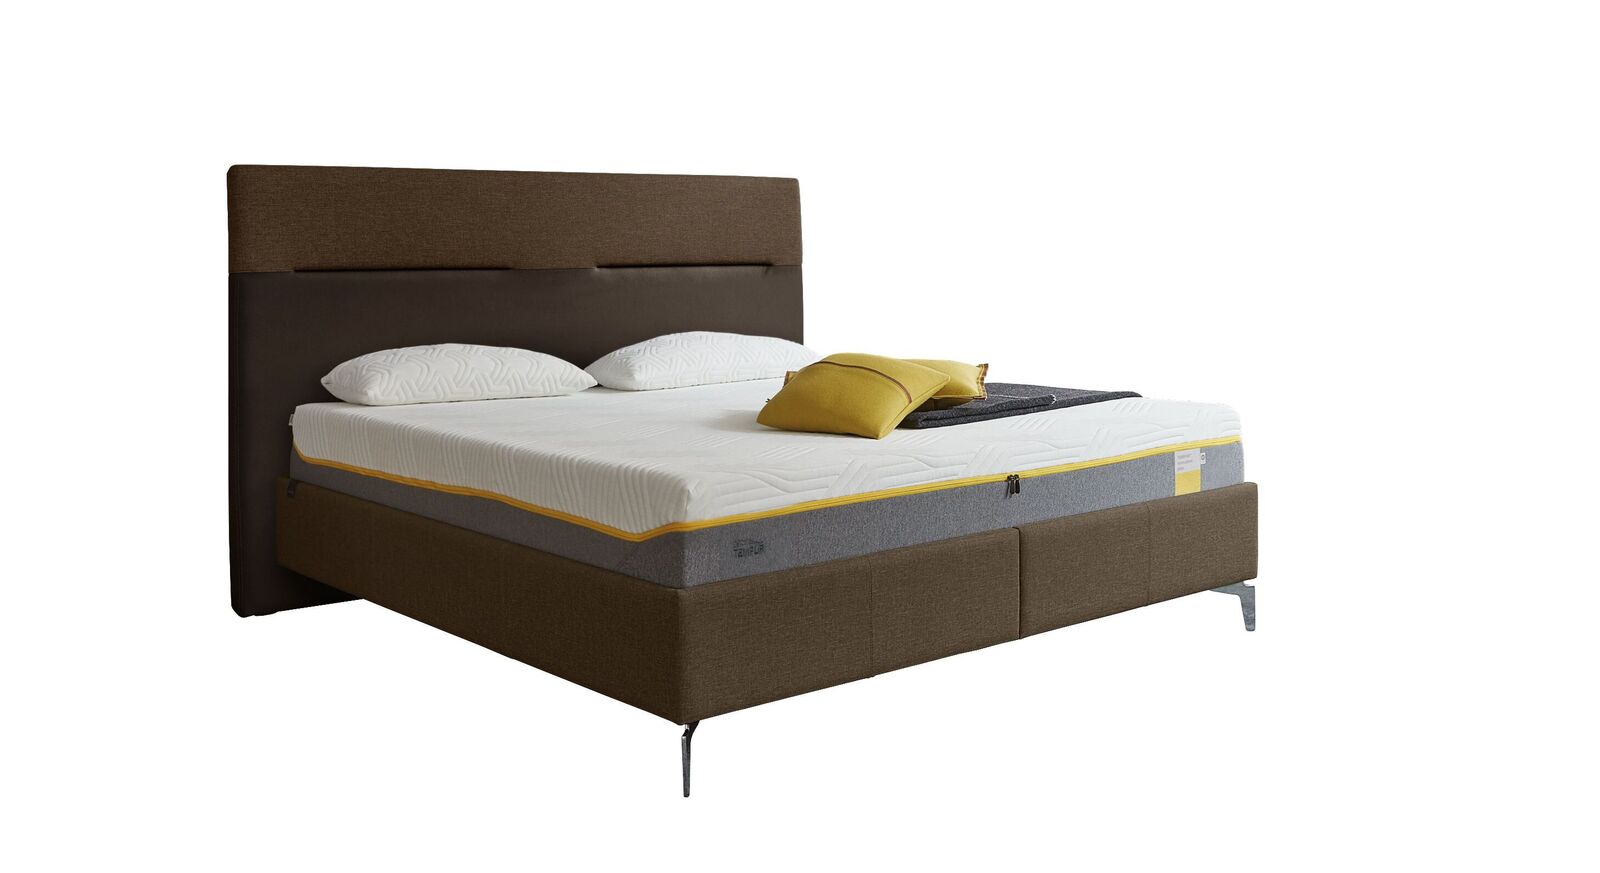 TEMPUR Bett Relax Texture mit Bezug in Webstoff und Kunstleder in Hellbraun